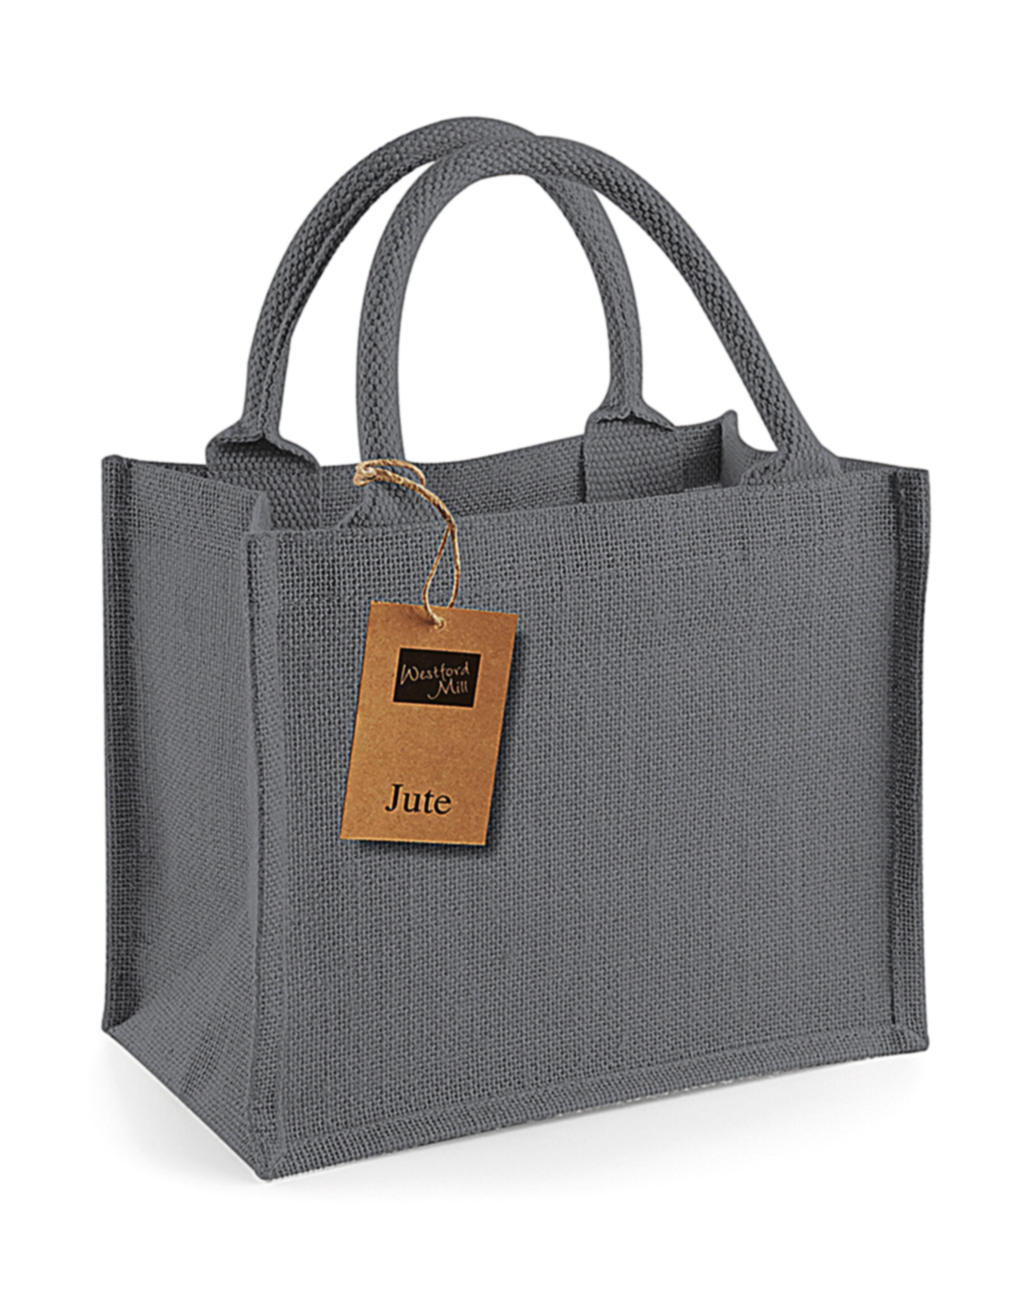  Jute Mini Gift Bag in Farbe Graphite Grey/Graphite Grey